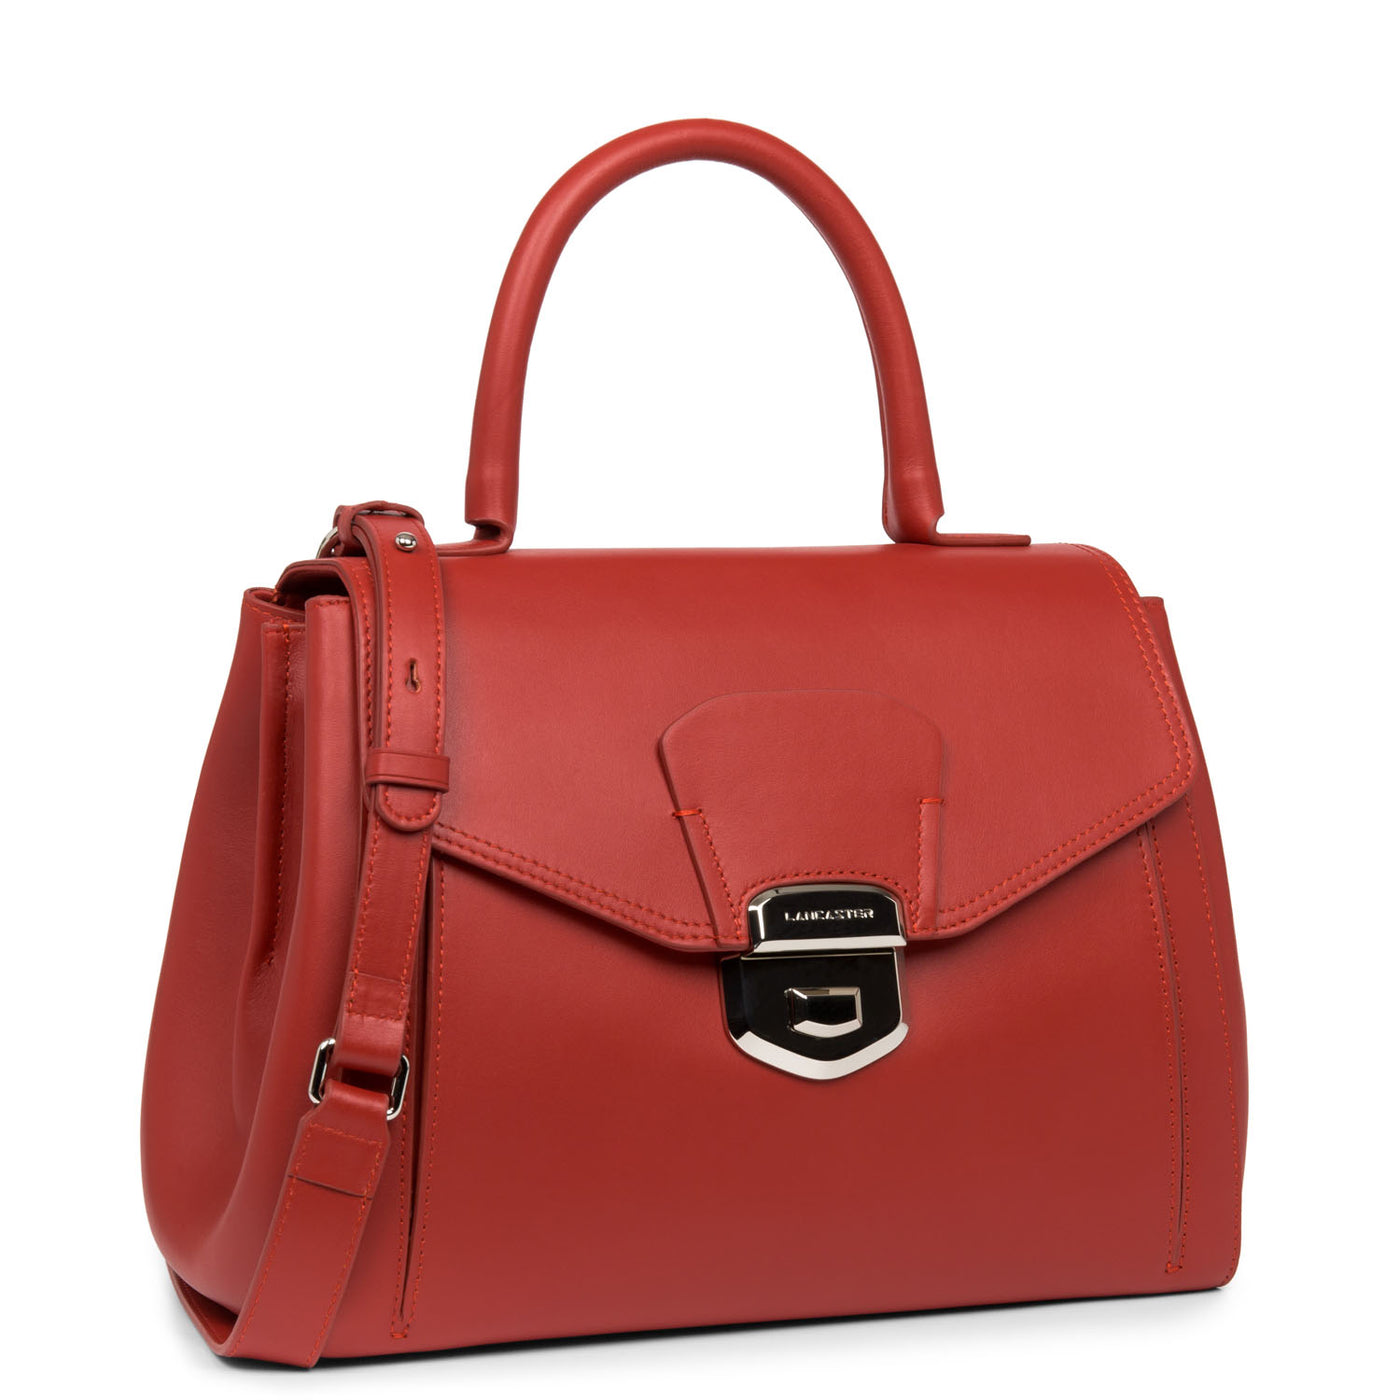 sac cabas main - parisienne sophia #couleur_rouge